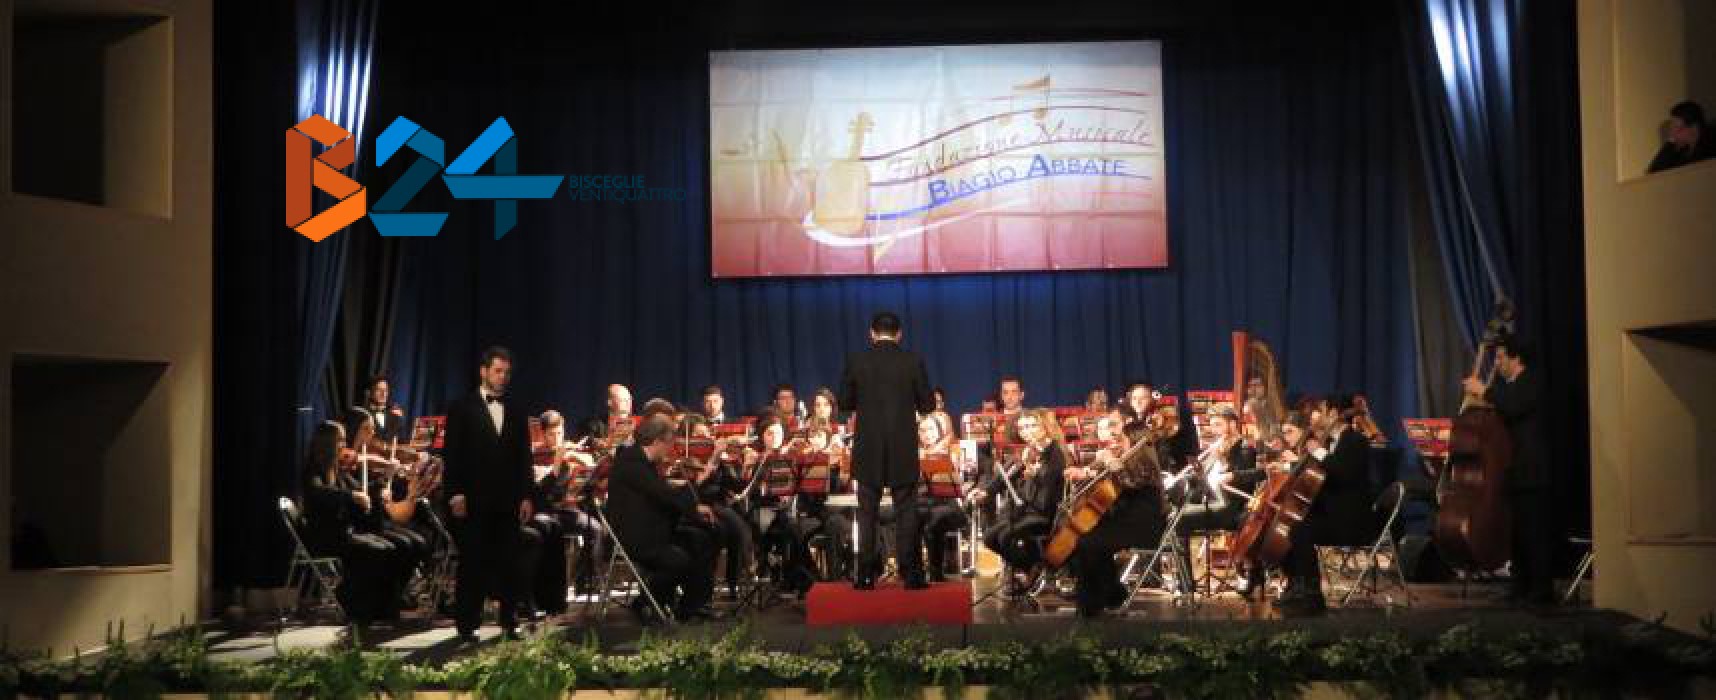 La BAT sceglie l’orchestra lirico sinfonica Biagio Abbate di Bisceglie come orchestra provinciale